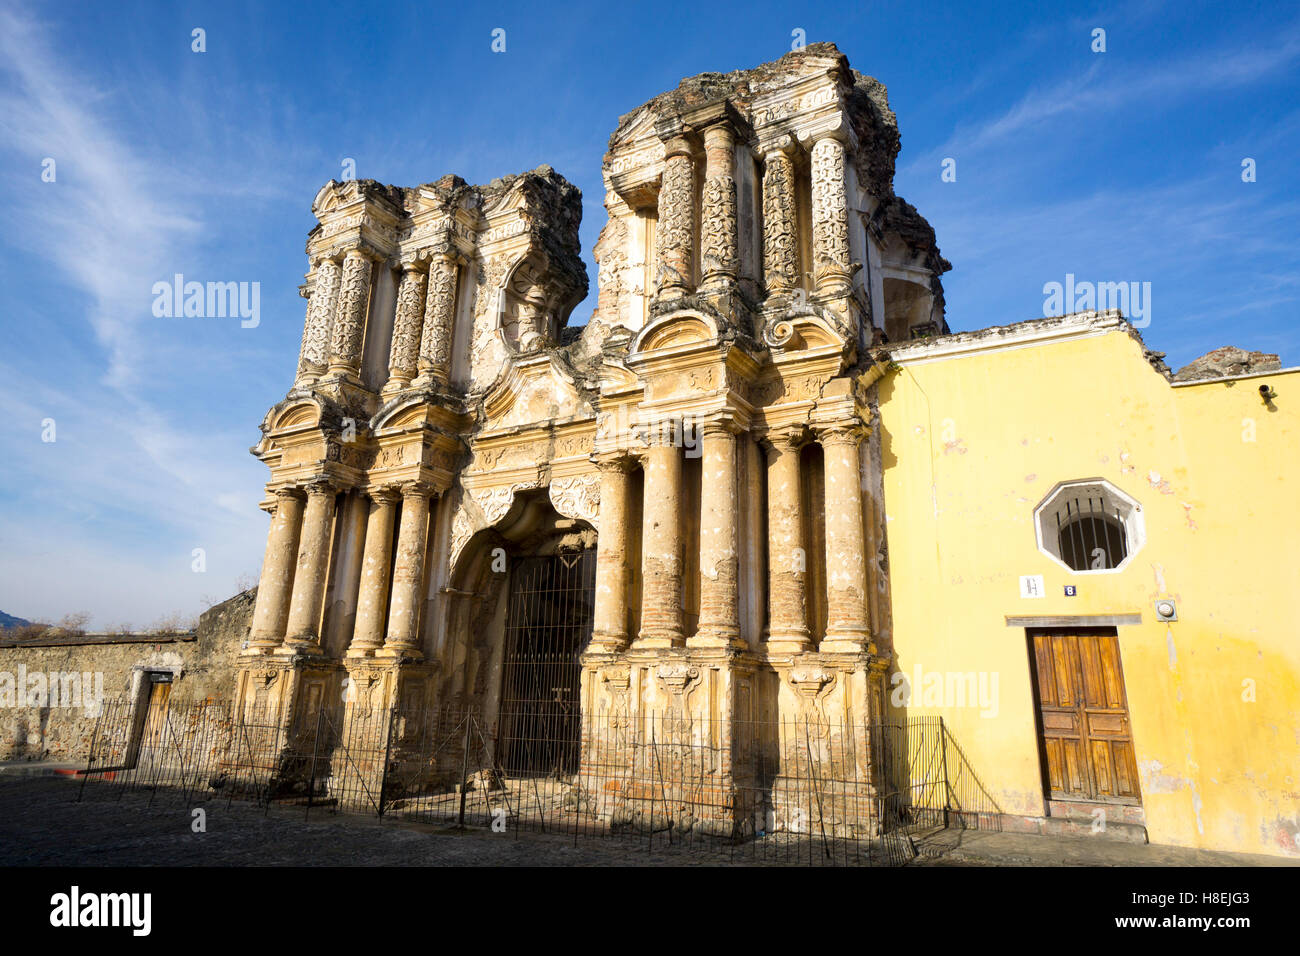 El Carmen rovina, Antigua, Sito Patrimonio Mondiale dell'UNESCO, Guatemala, America Centrale Foto Stock